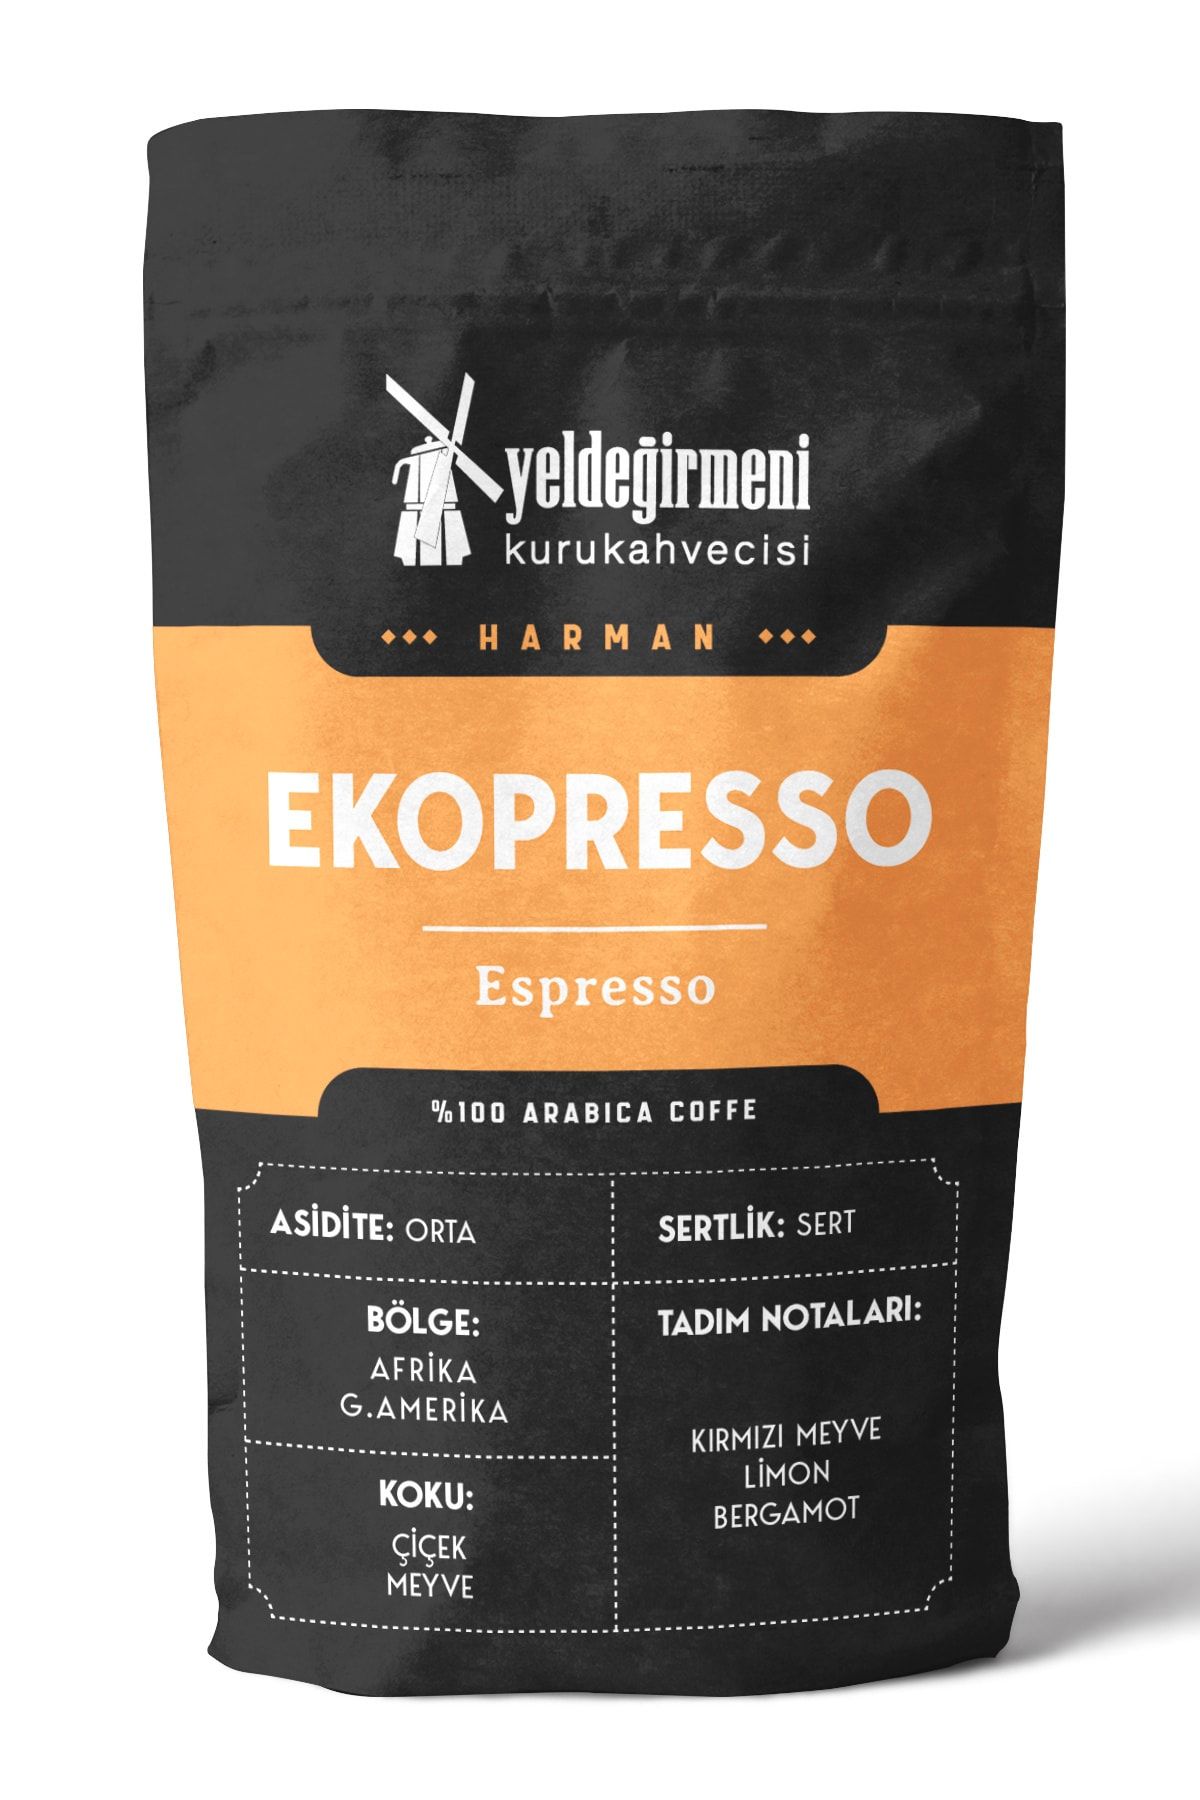 Yeldeğirmeni Kurukahvecisi Ekopresso Espresso Kahve 1000 gr